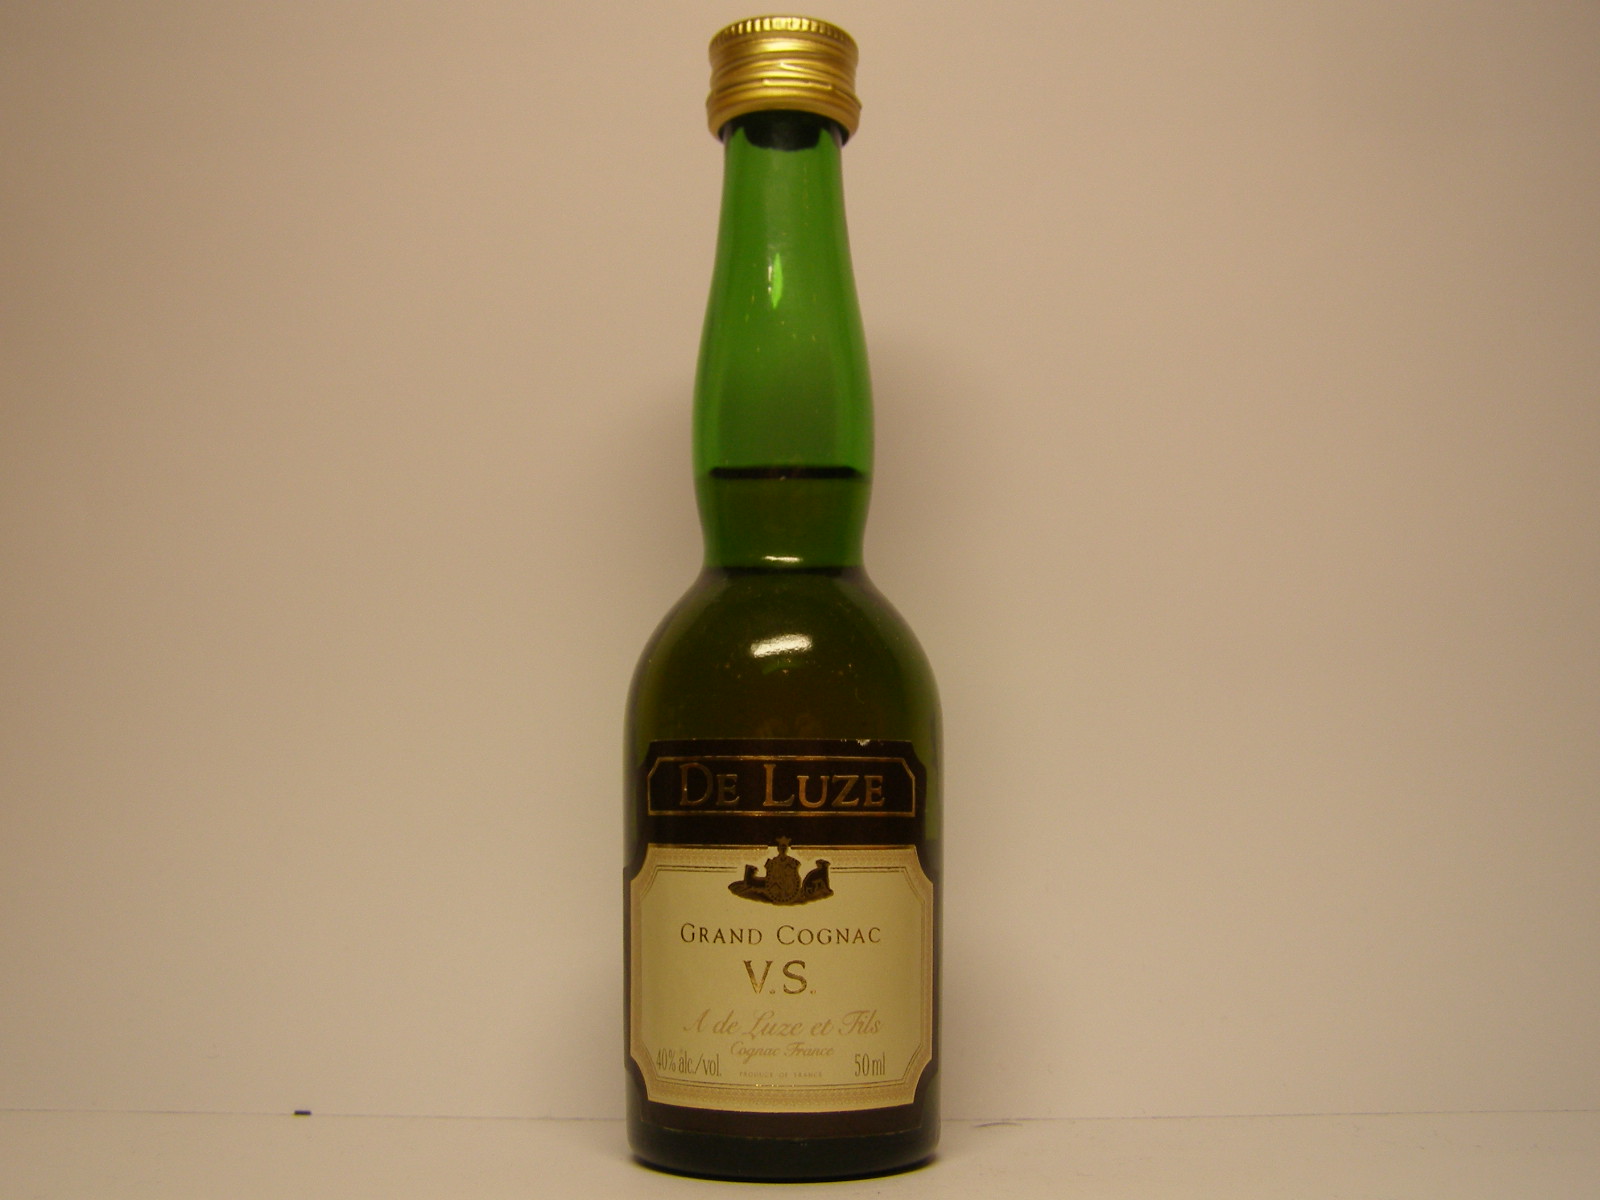 V.S. Grand Cognac